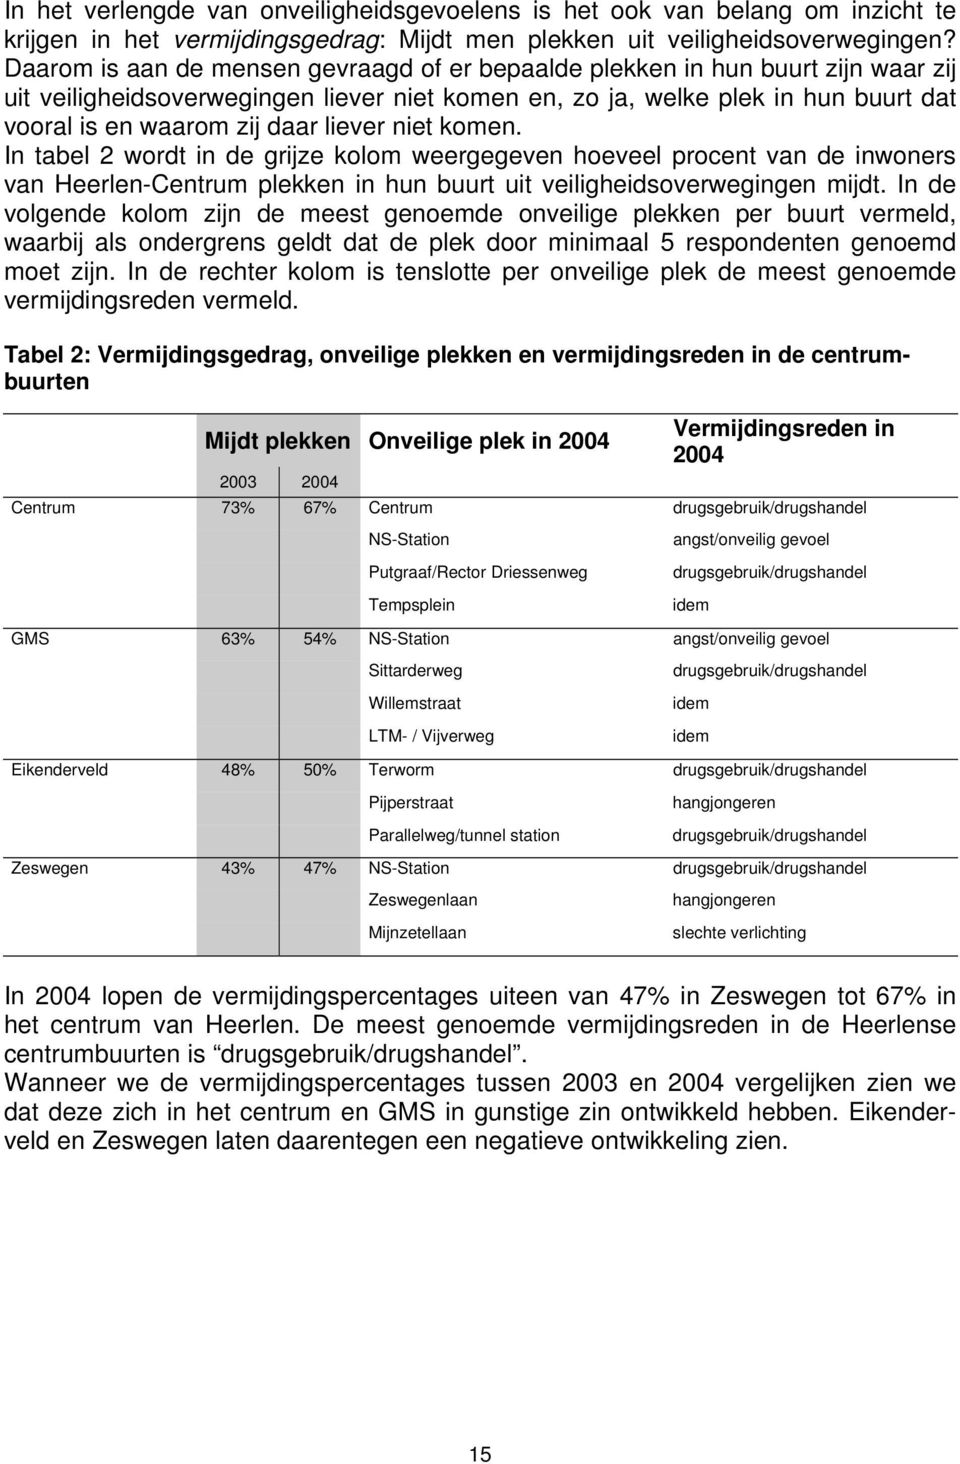 liever niet komen. In tabel 2 wordt in de grijze kolom weergegeven hoeveel procent van de inwoners van Heerlen-Centrum plekken in hun buurt uit veiligheidsoverwegingen mijdt.